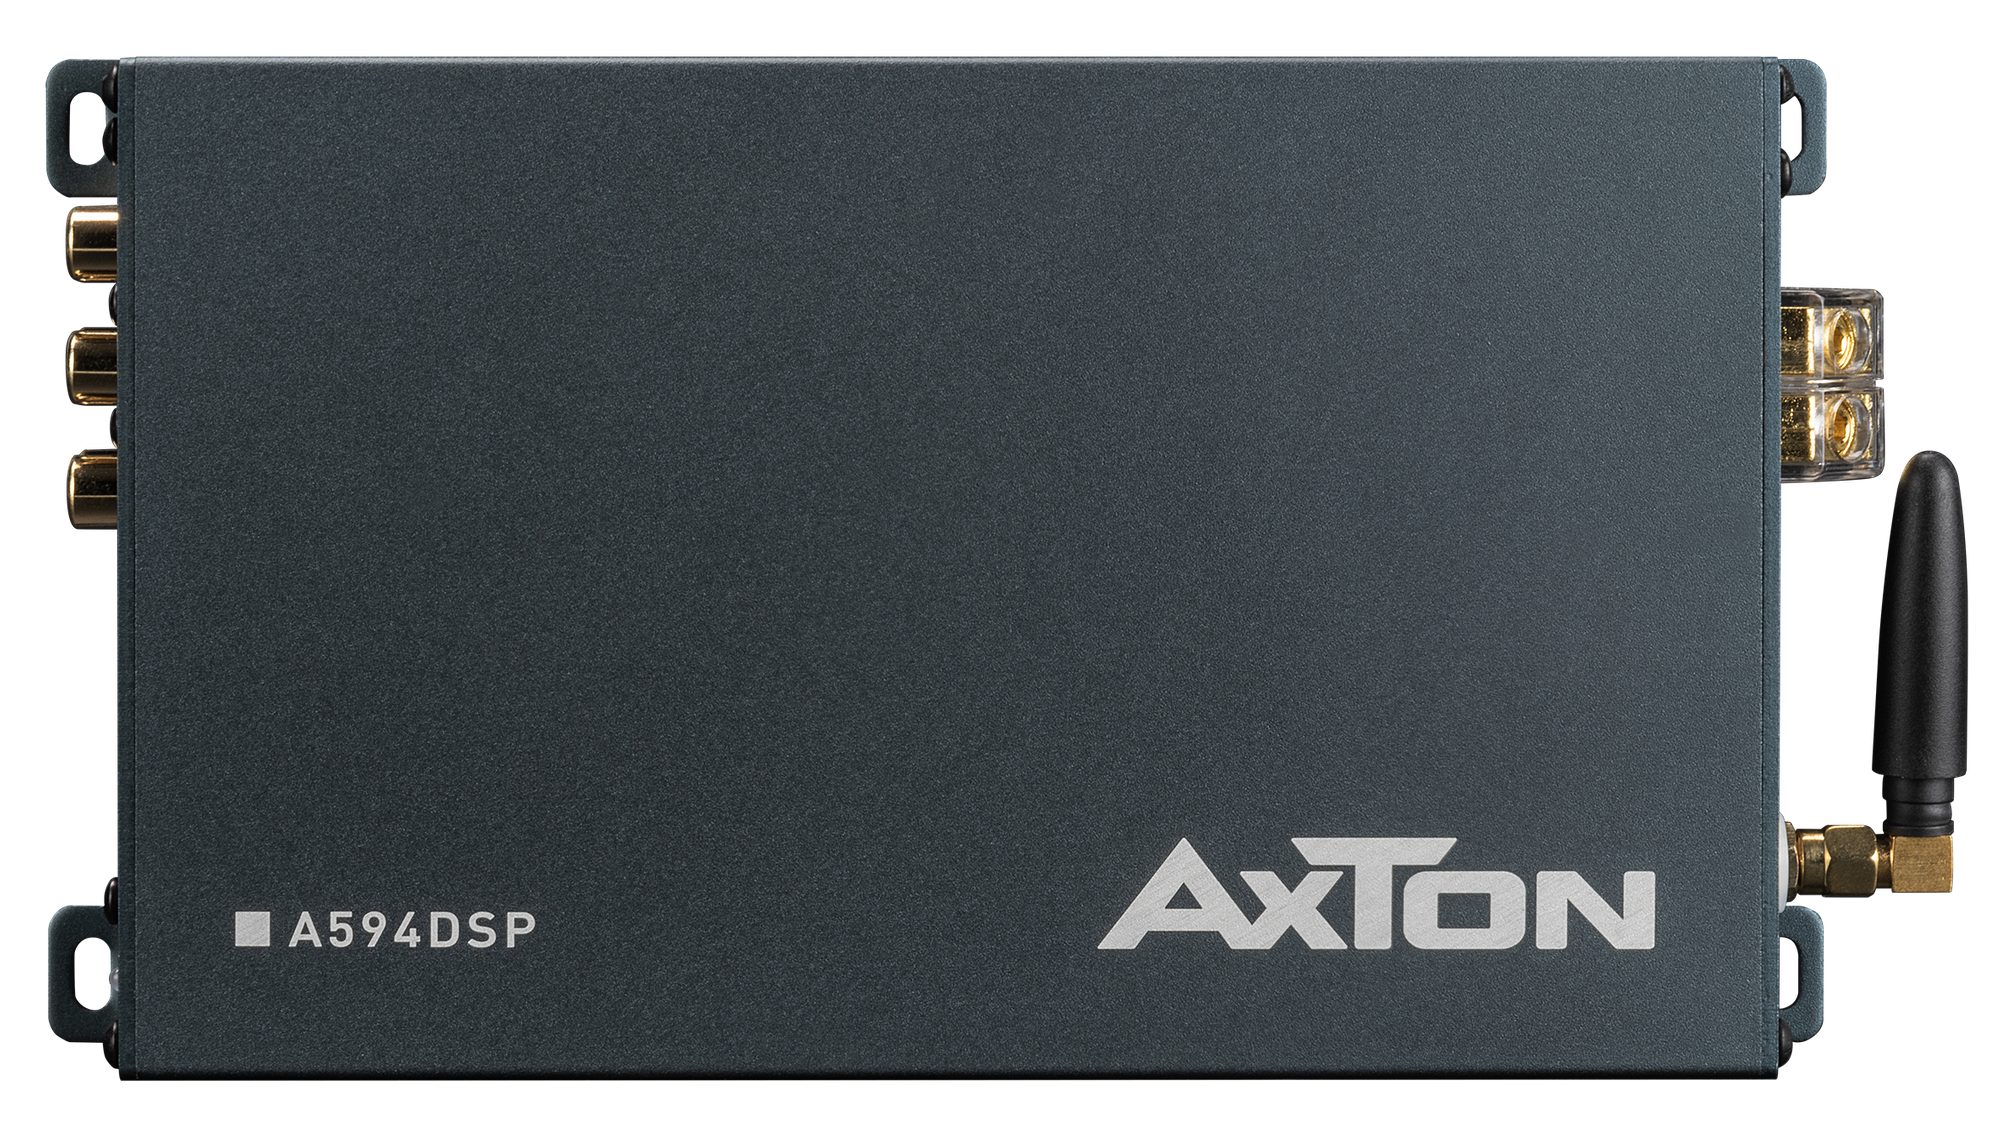 DSP-Verstärker fähig Verstärker Axton Watt Hi-Res 6 Kanal 4x150 A594DSP